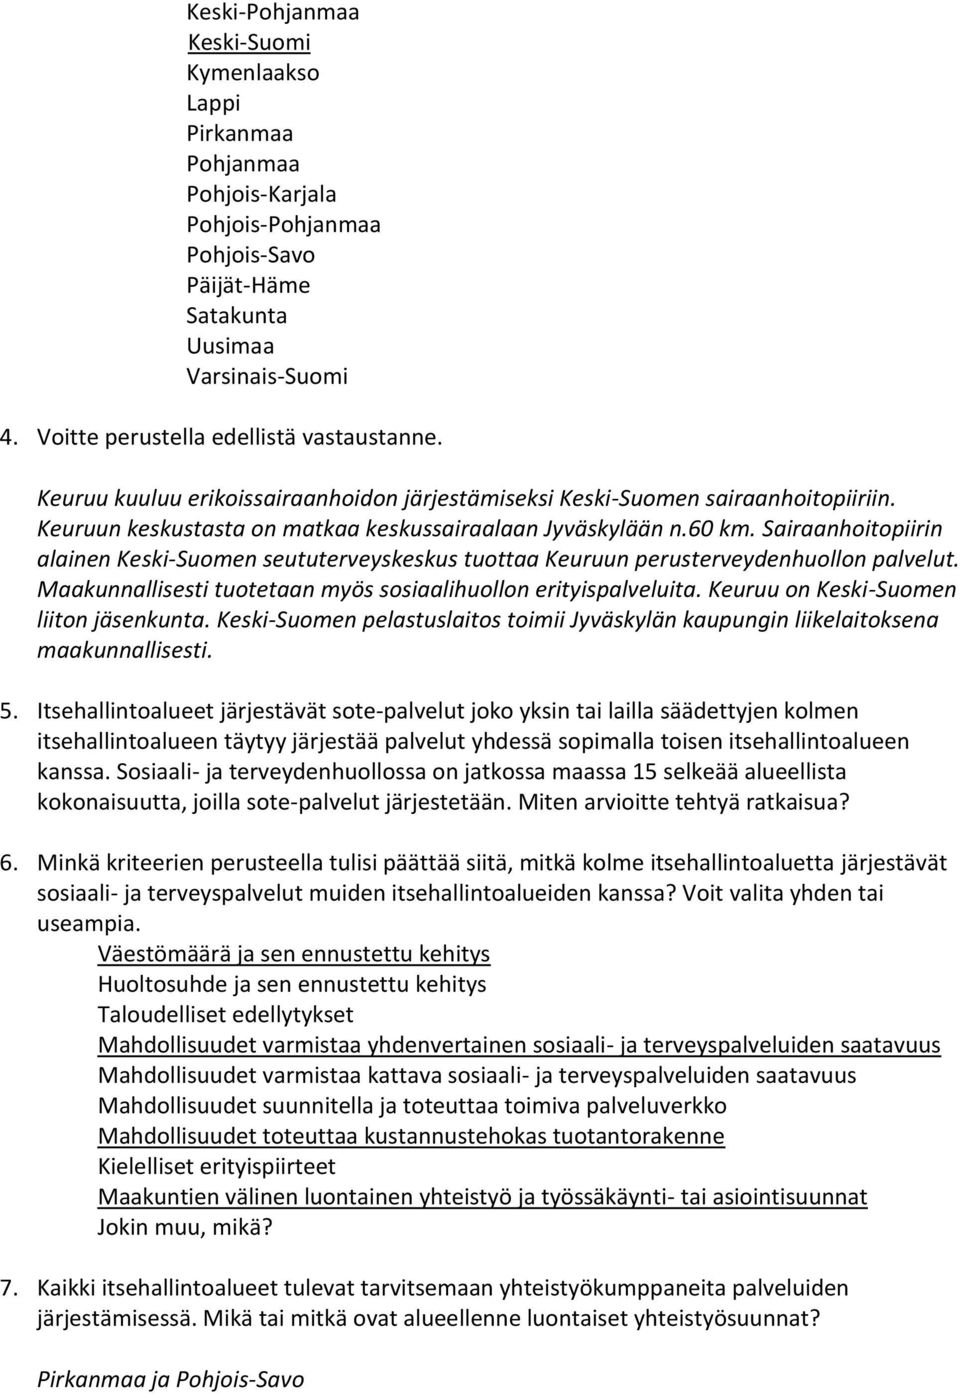 Sairaanhoitopiirin alainen Keski-Suomen seututerveyskeskus tuottaa Keuruun perusterveydenhuollon palvelut. Maakunnallisesti tuotetaan myös sosiaalihuollon erityispalveluita.